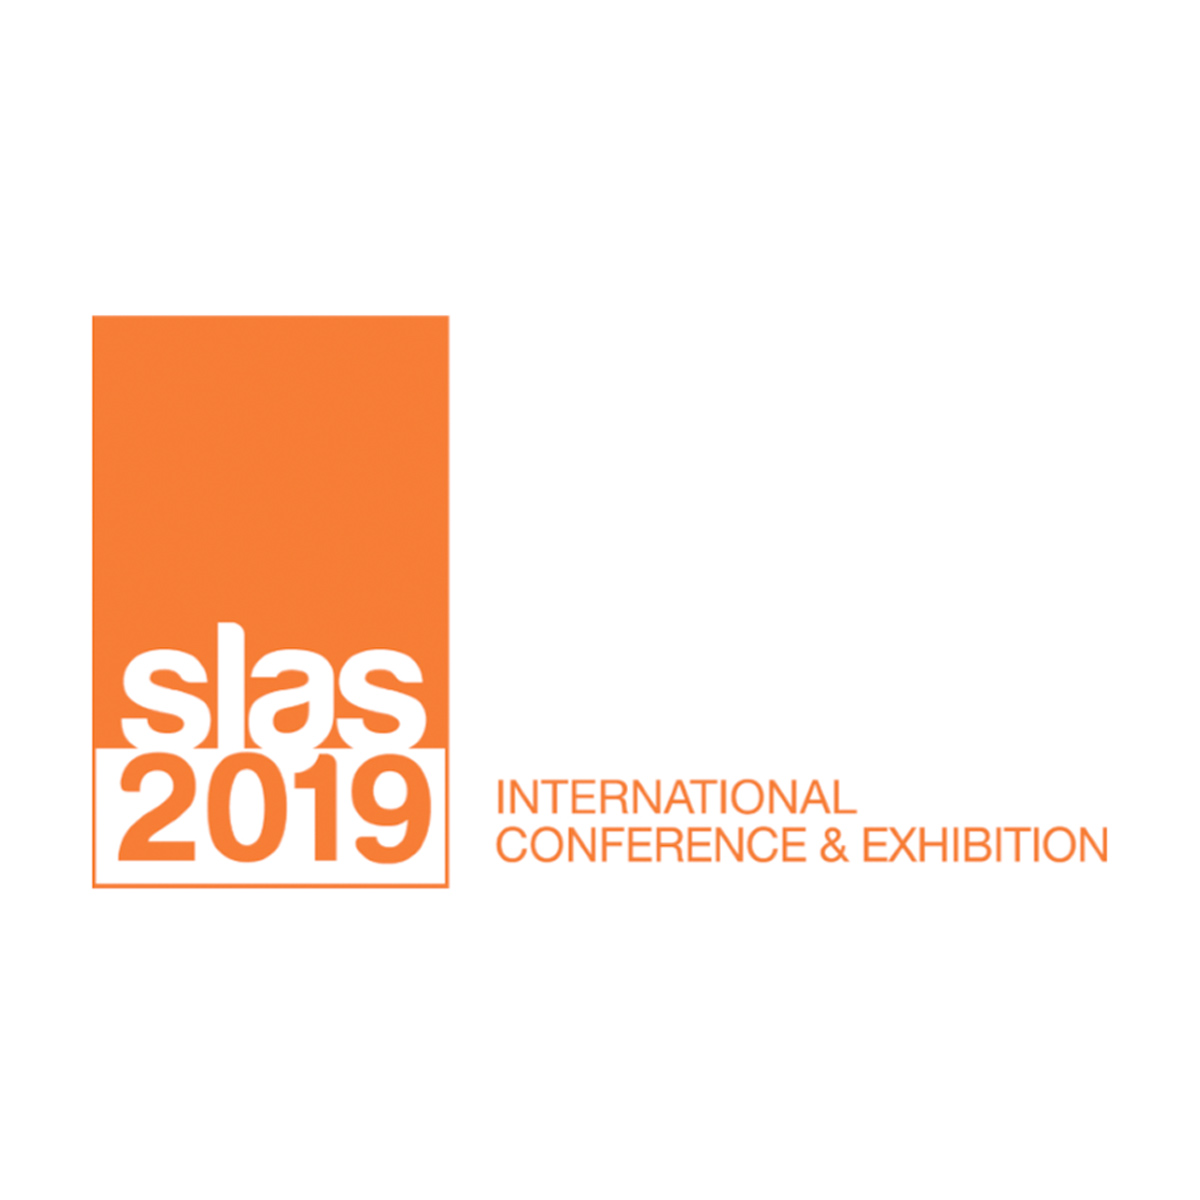 Slas 2019 – International Conference & Exhibition